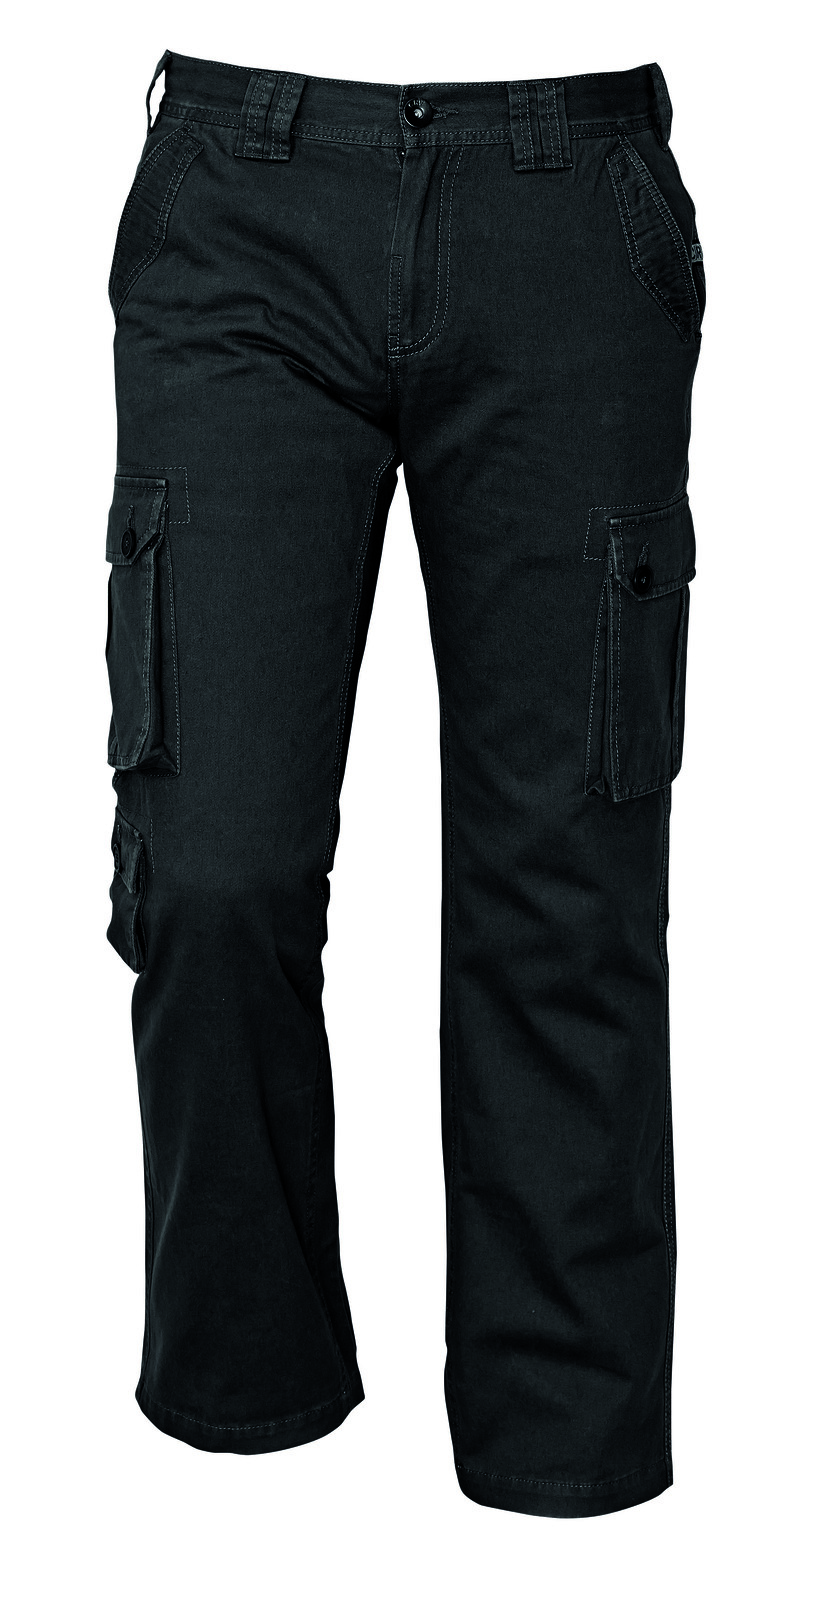 Pánske nohavice Chena kapsáče - veľkosť: XXL, farba: čierna